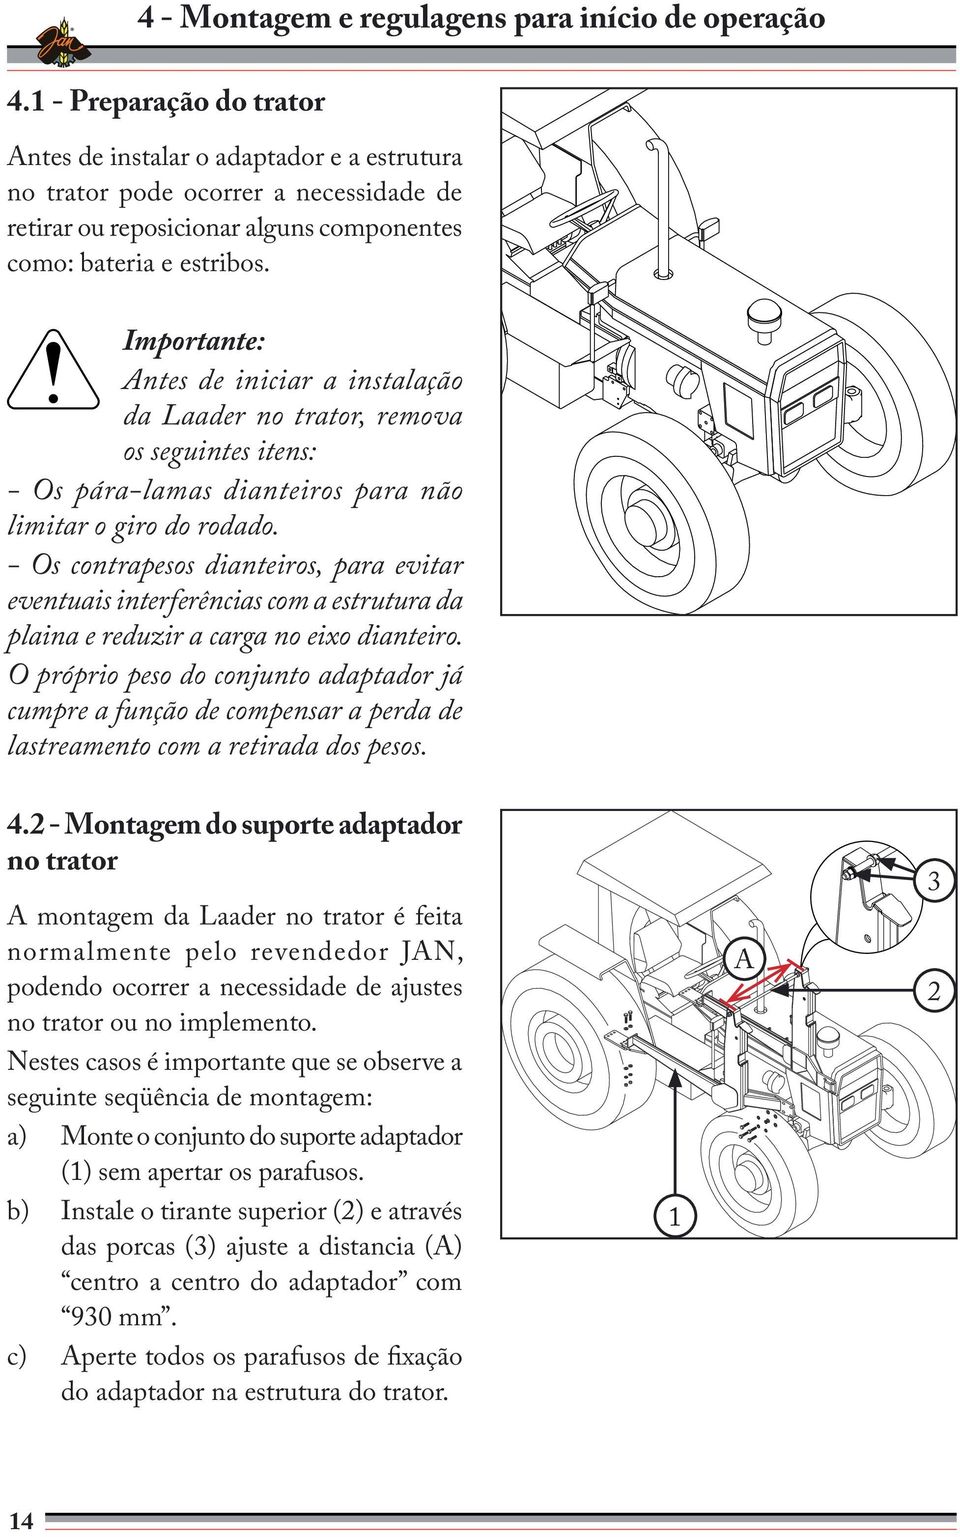 Importante: Antes de iniciar a instalação da Laader no trator, remova os seguintes itens: - Os pára-lamas dianteiros para não limitar o giro do rodado.